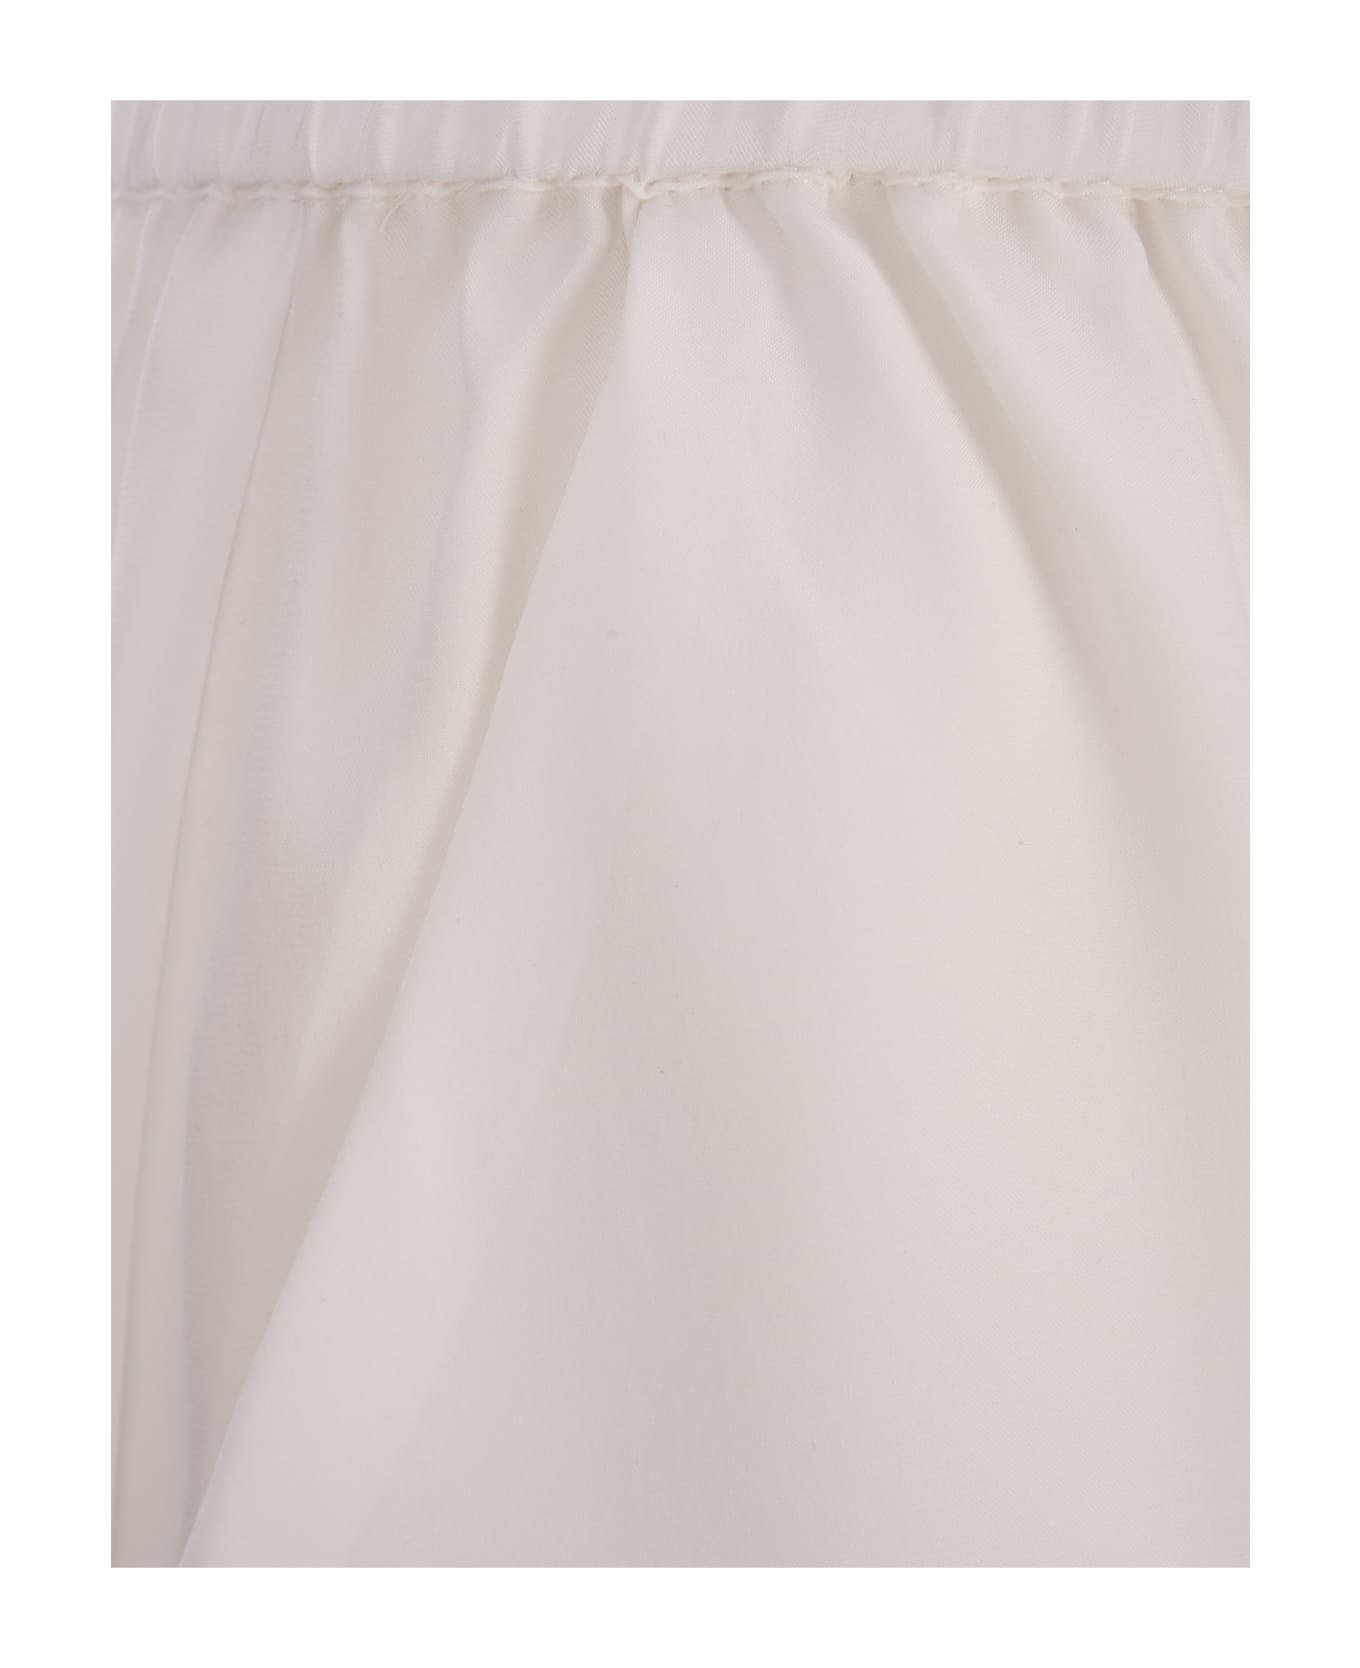 Parosh Sofia Shorts In White Silk - White ショートパンツ